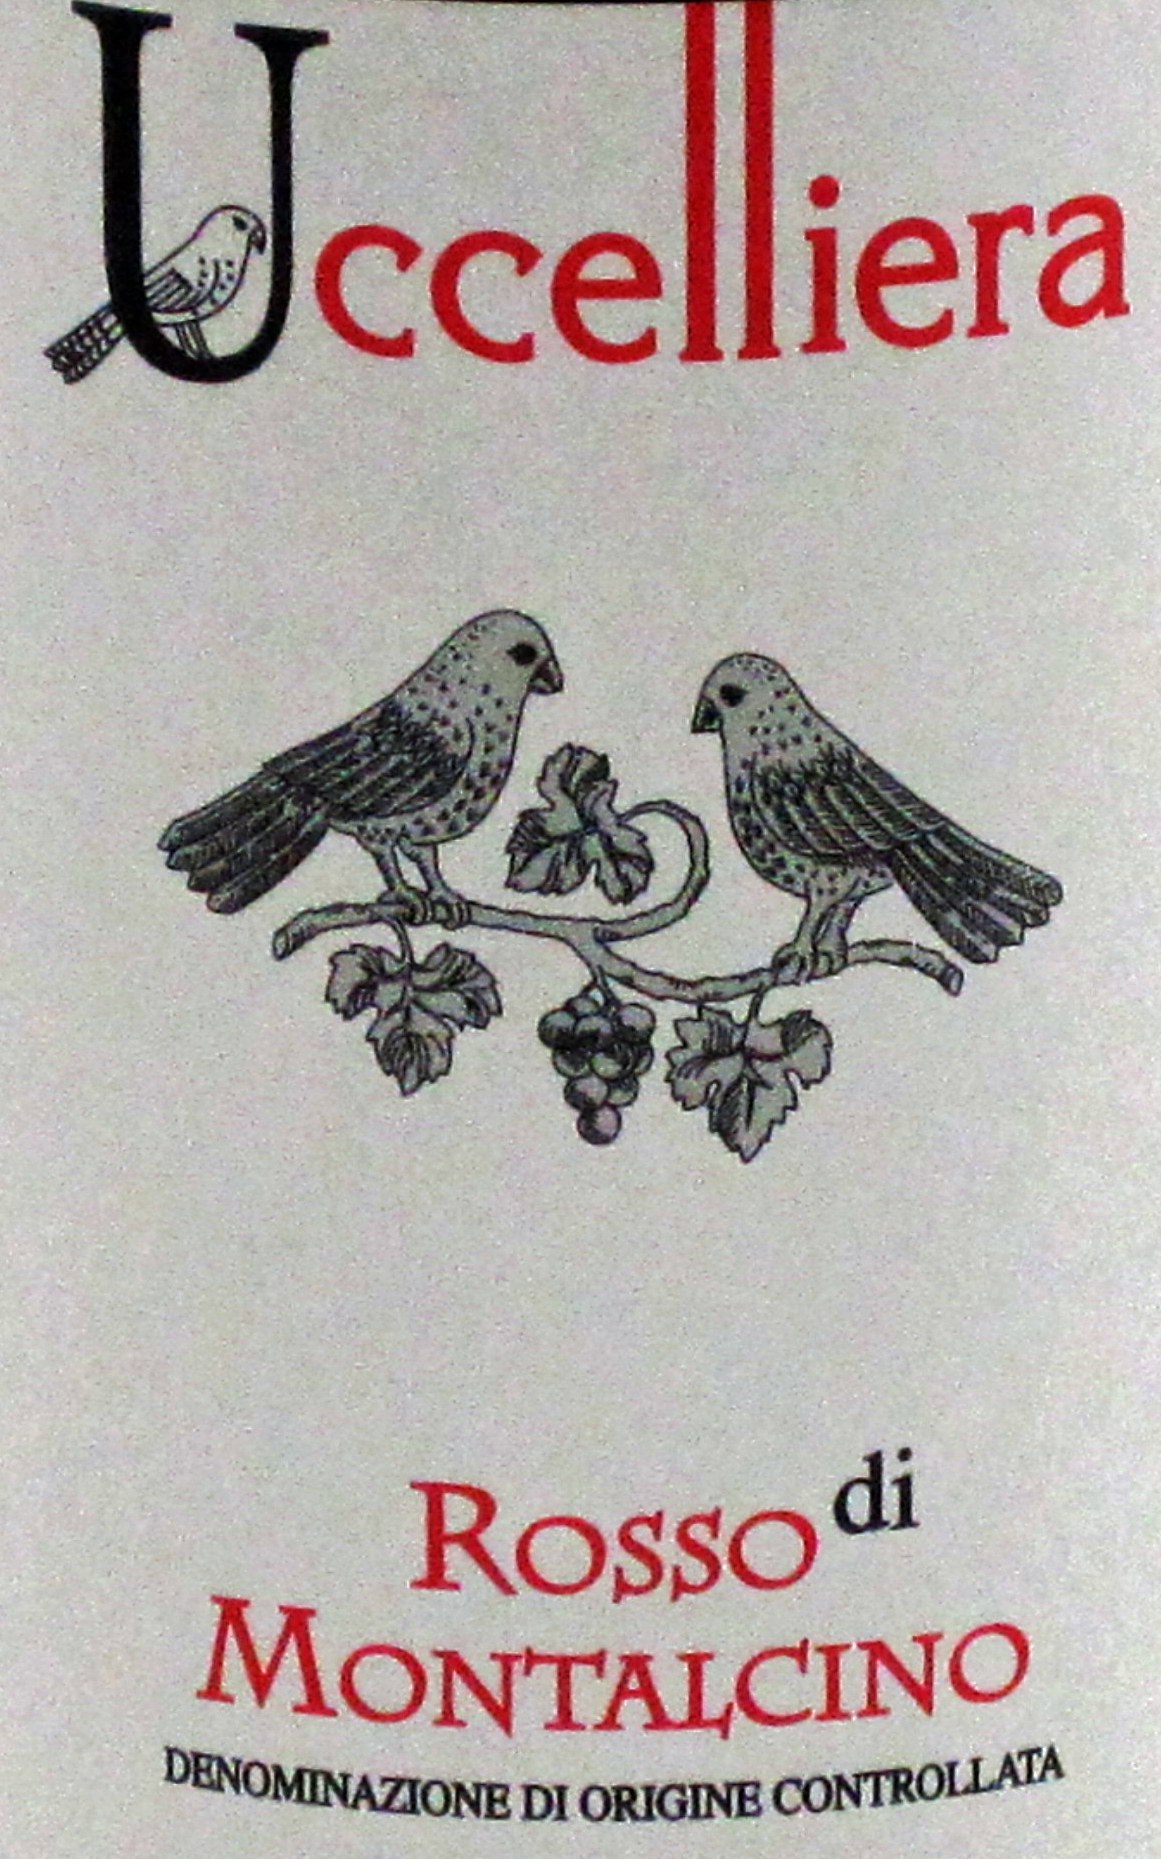 2015 Uccelliera Rosso Di Montalcino image